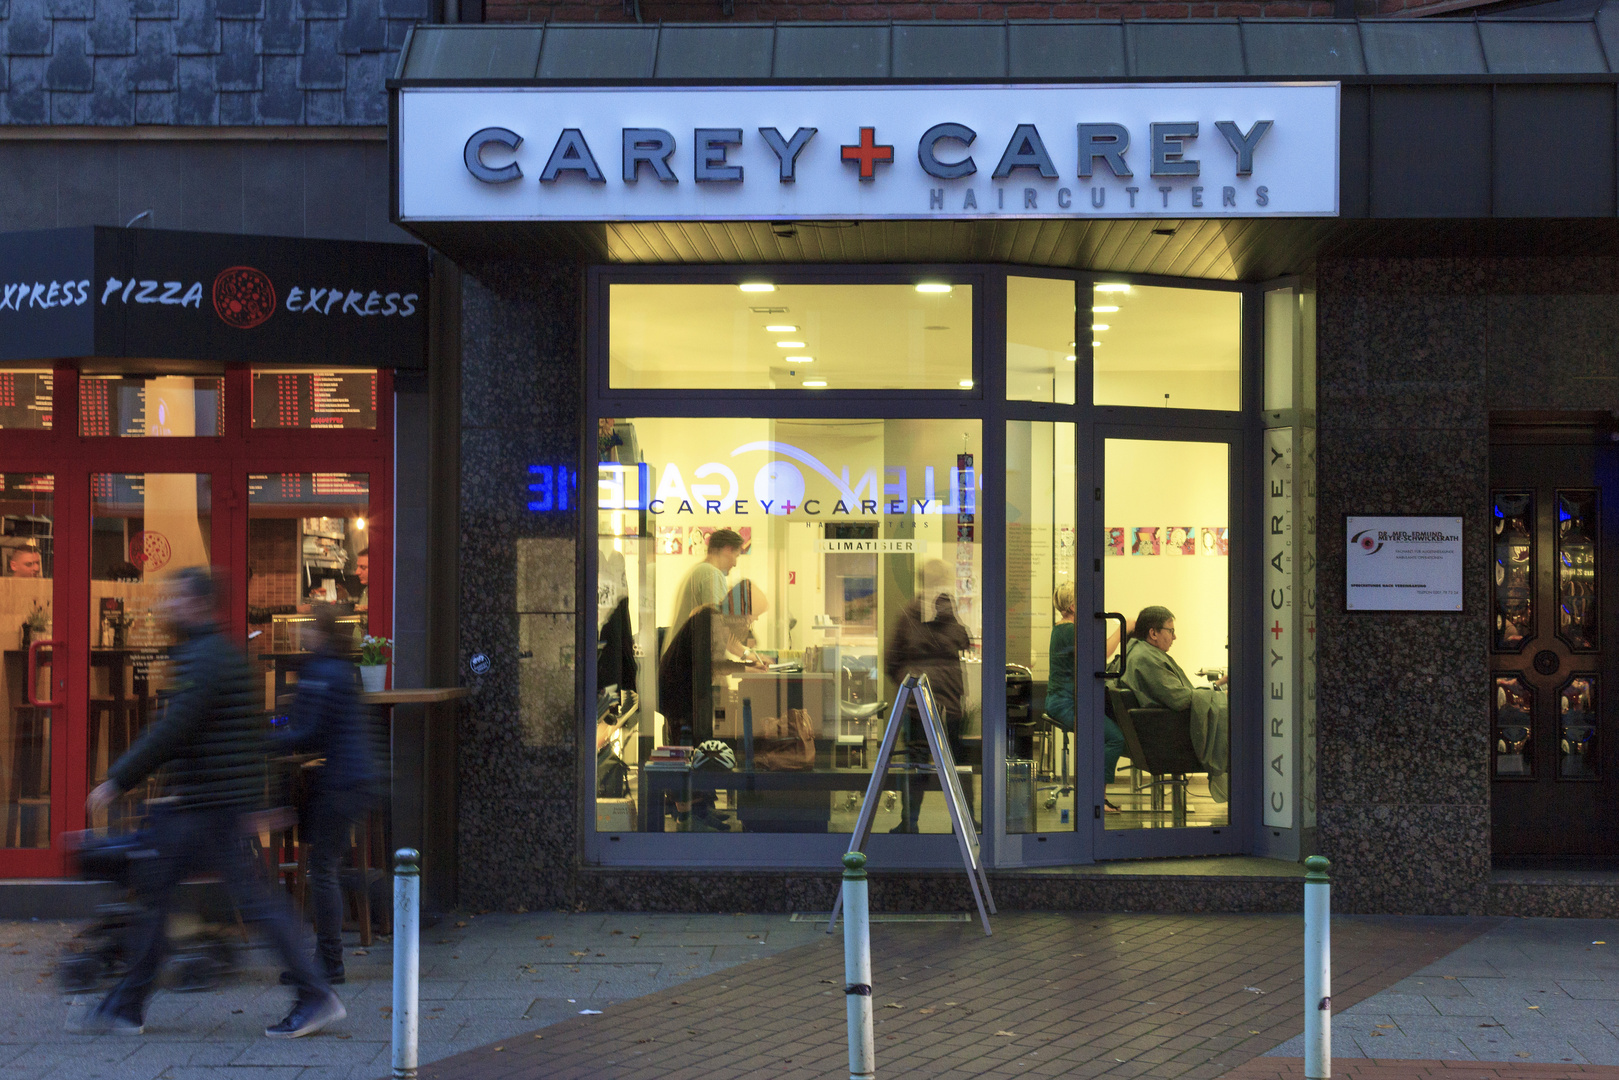 CAREY + CAREY HAIRCUTTERS in Essen